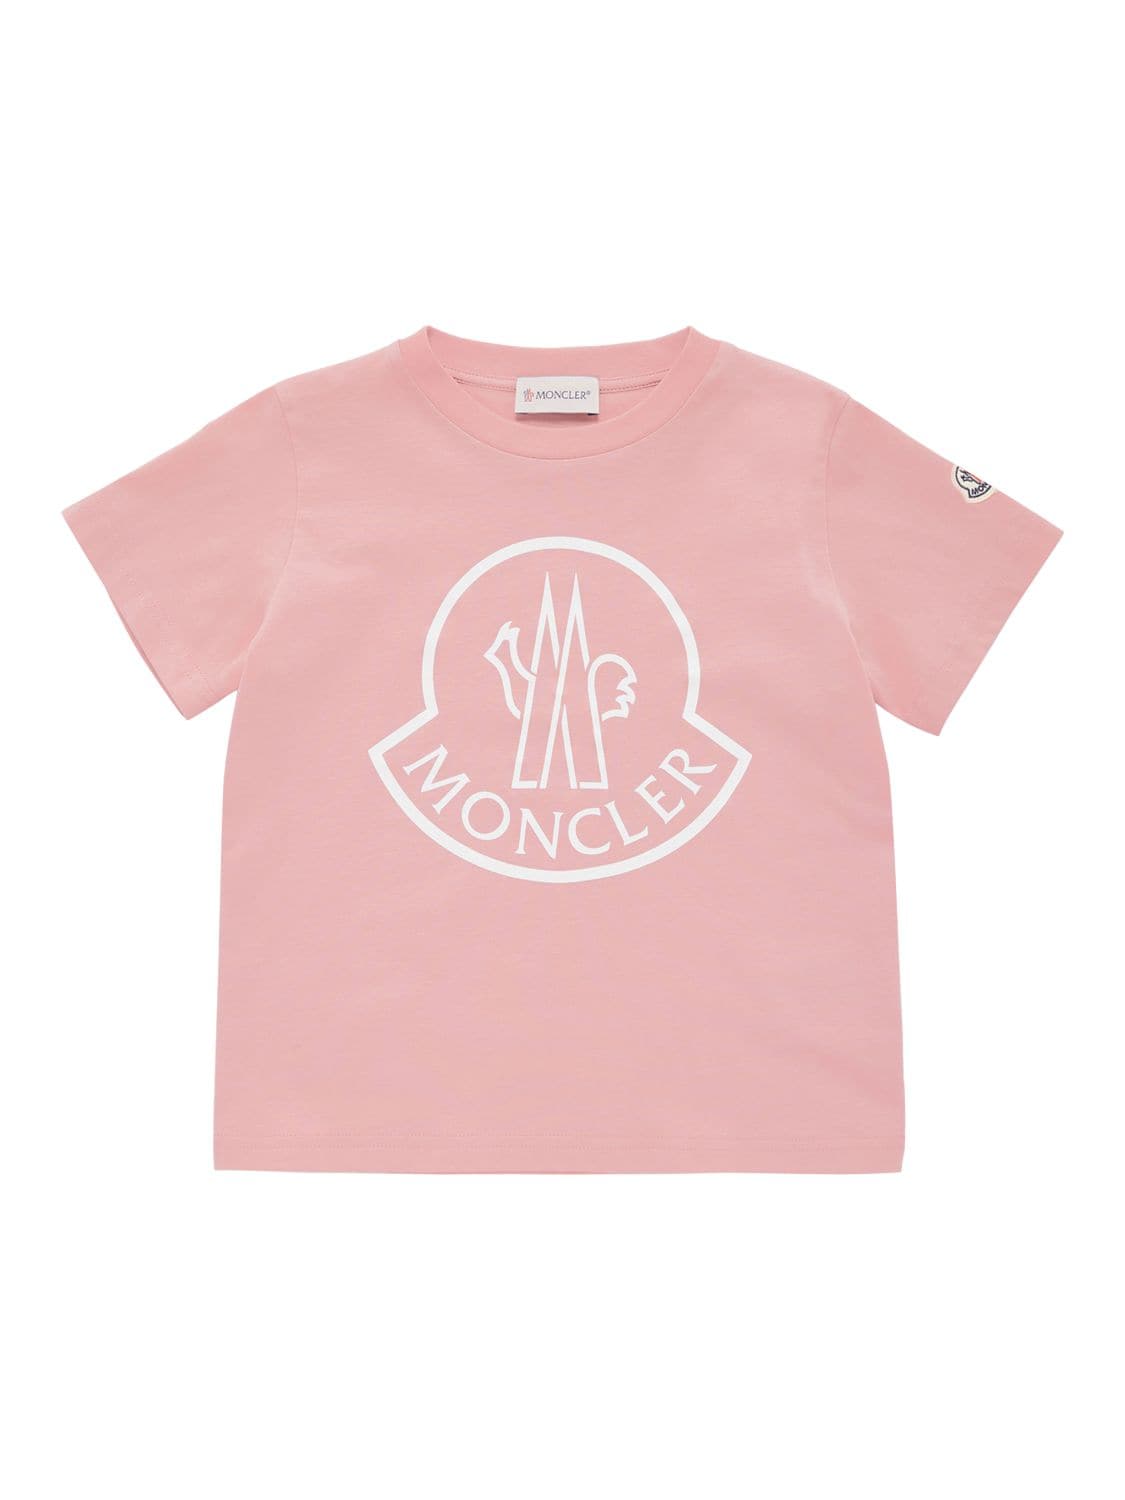 Moncler Kids' Logo Cotton Jersey T-shirt In Pink